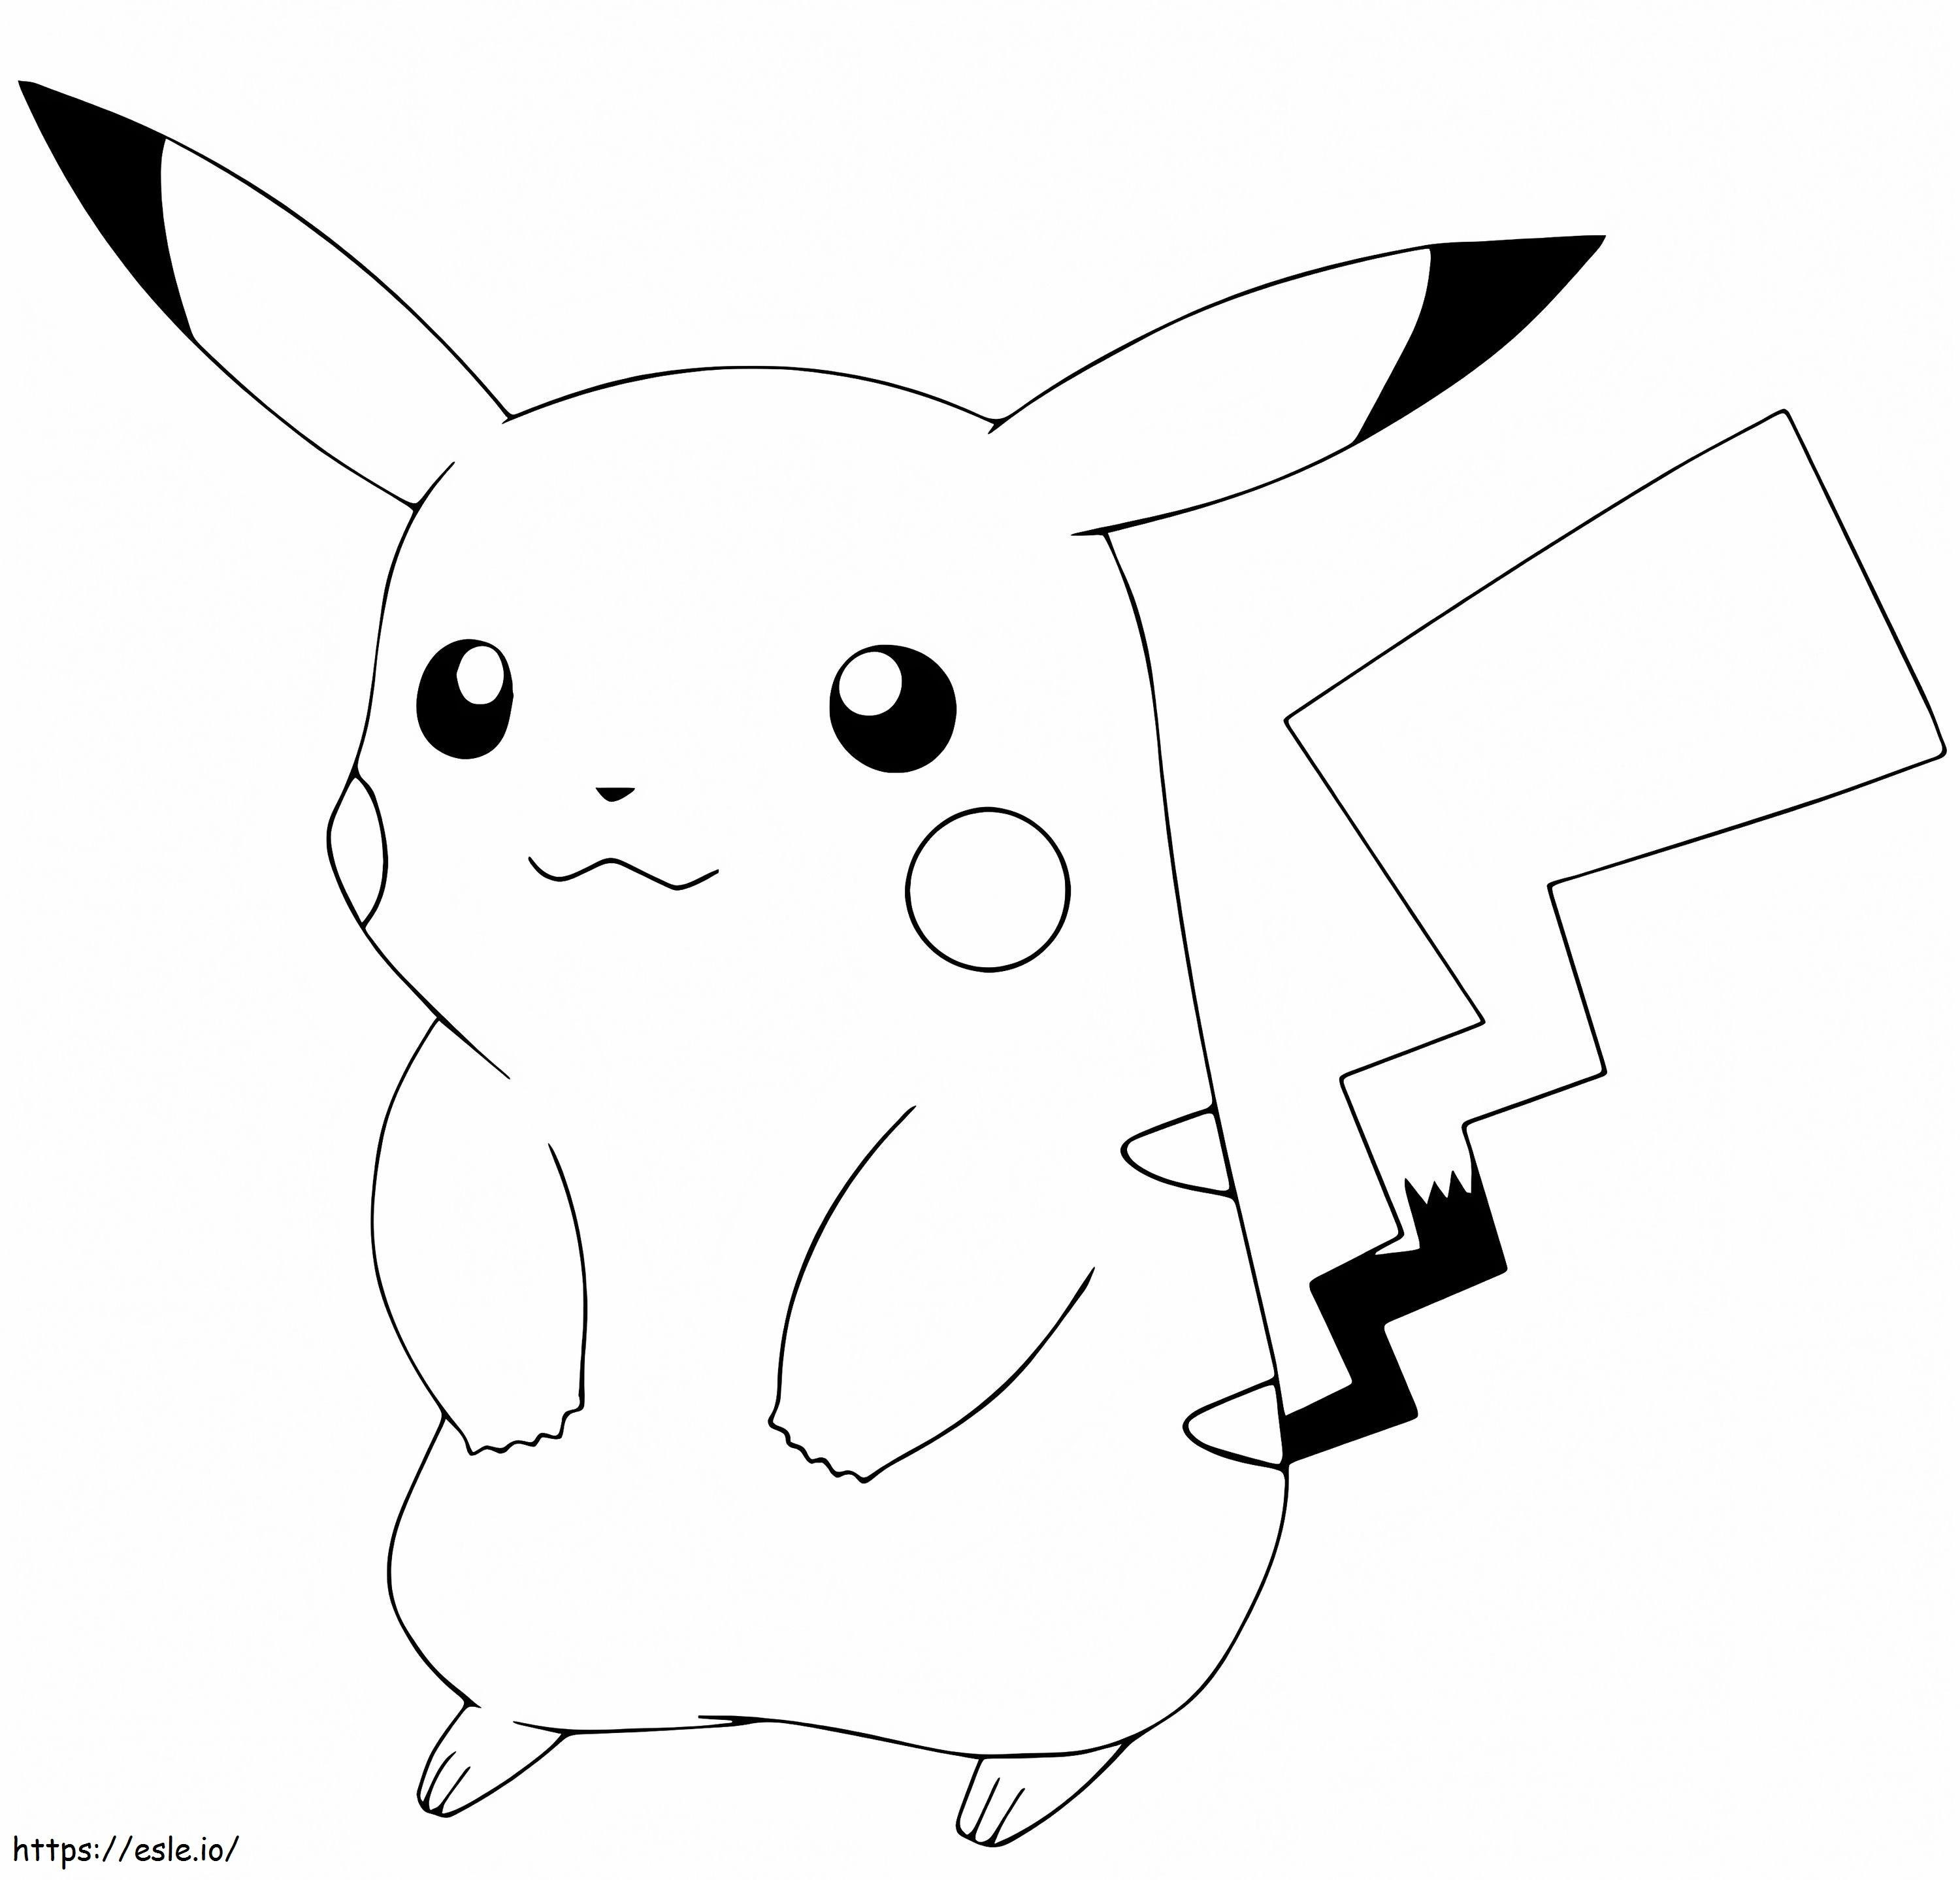 Coloriage Pokémon Go Pikachu à imprimer dessin